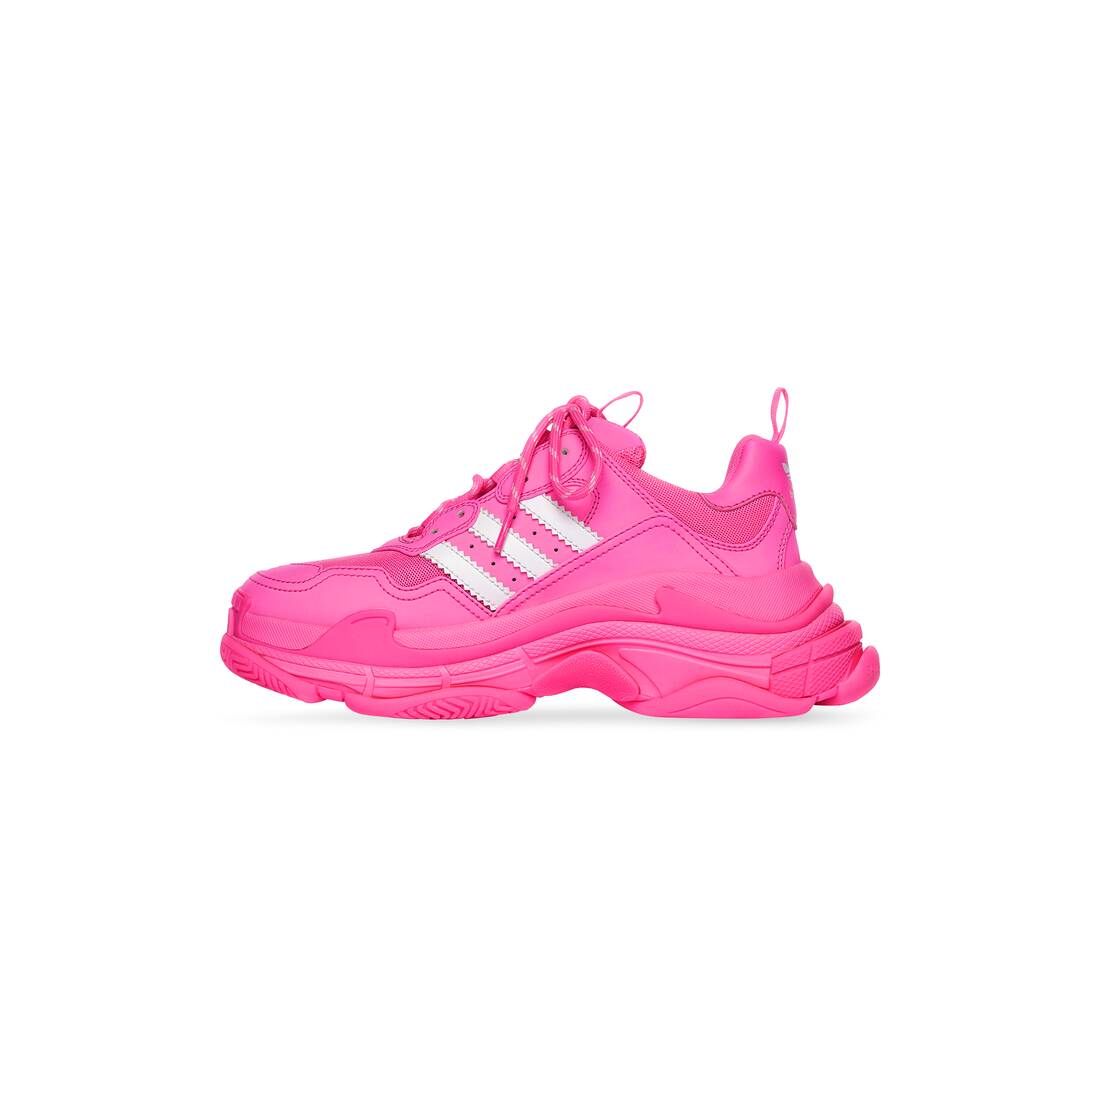 kin lezer Beukende Women's Balenciaga / Adidas Triple S Sneaker in Neon Pink | Balenciaga US